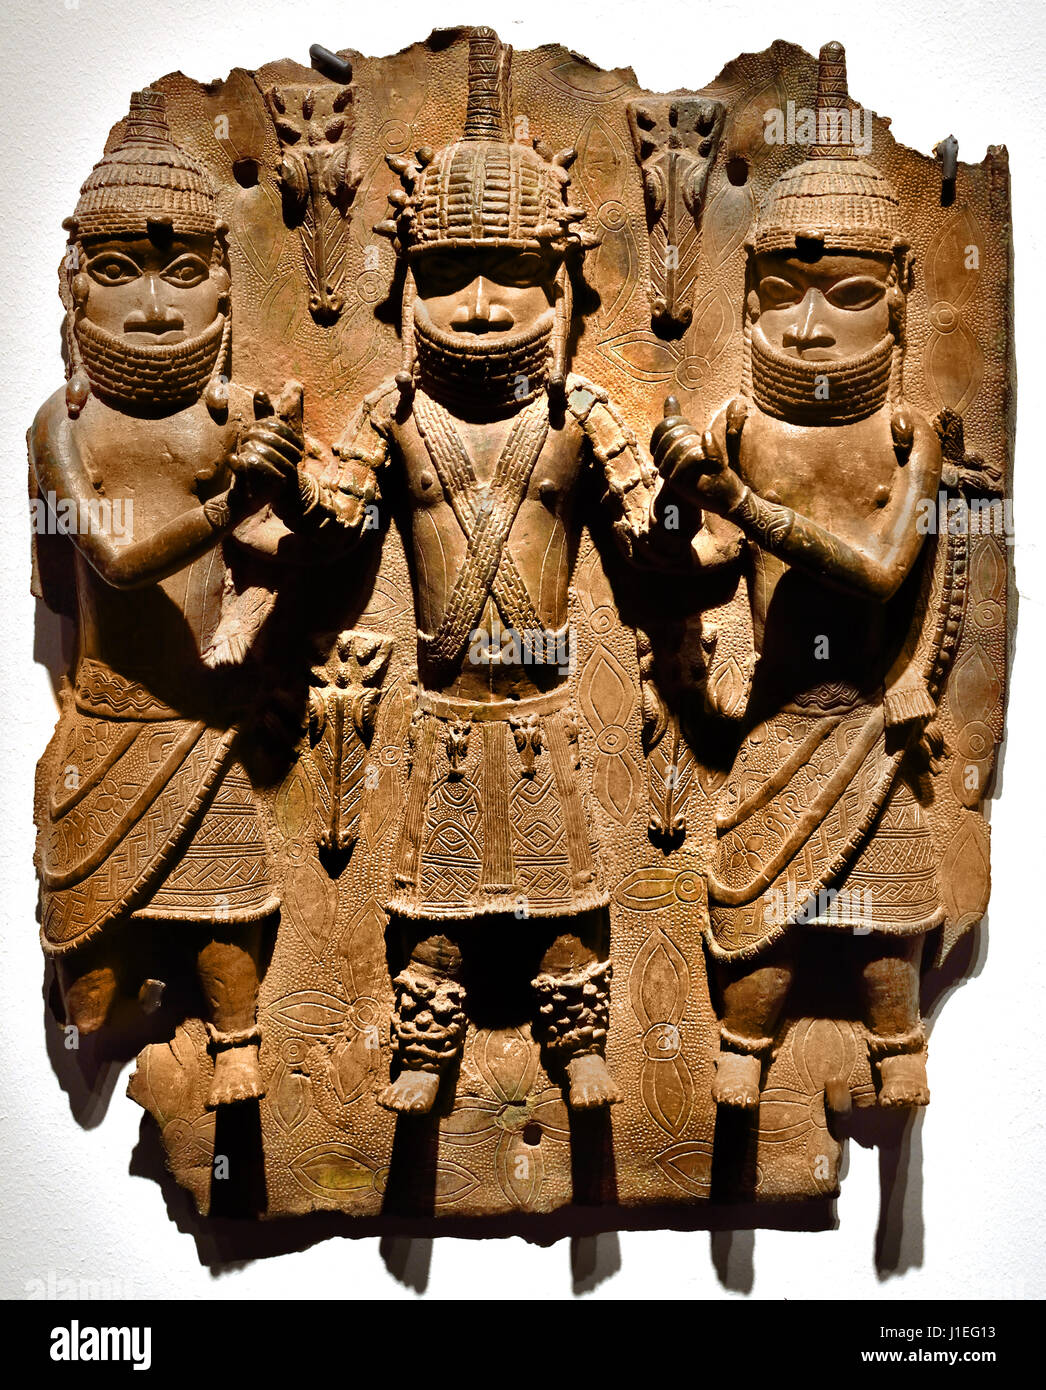 Roi avec deux escorts Bronze 16e - 17e siècle plaque de laiton montrant l'Abo du Bénin avec un accompagnateur, peuples Edo 16ème siècle annonce à partir de l'Afrique de l'Afrique Bénin, Nigéria Banque D'Images